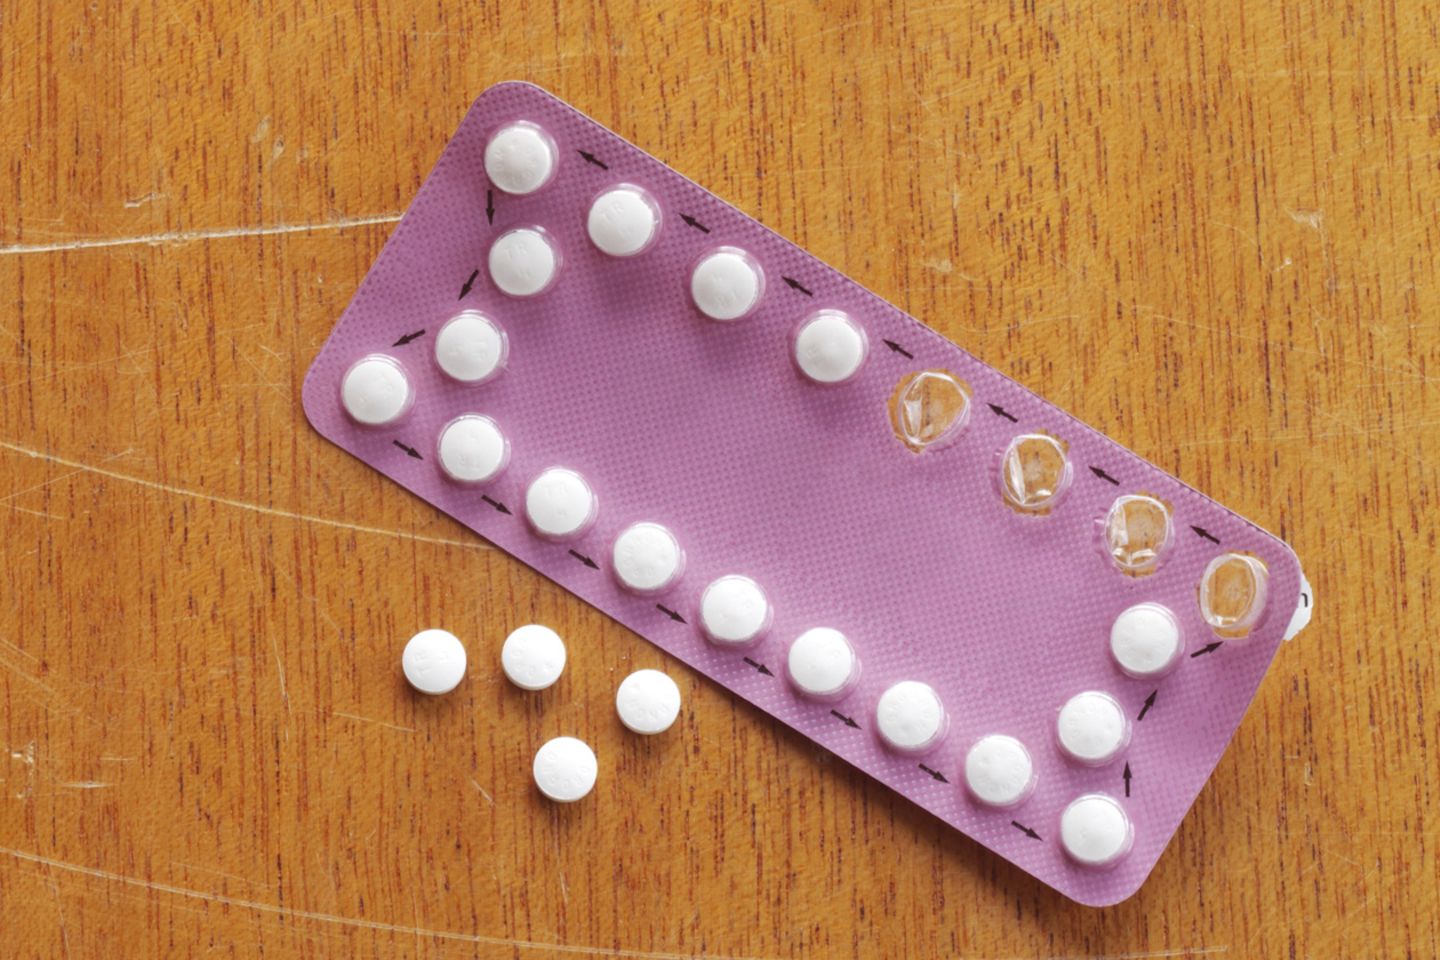 Die meisten Frauen verhüten mit der Pille